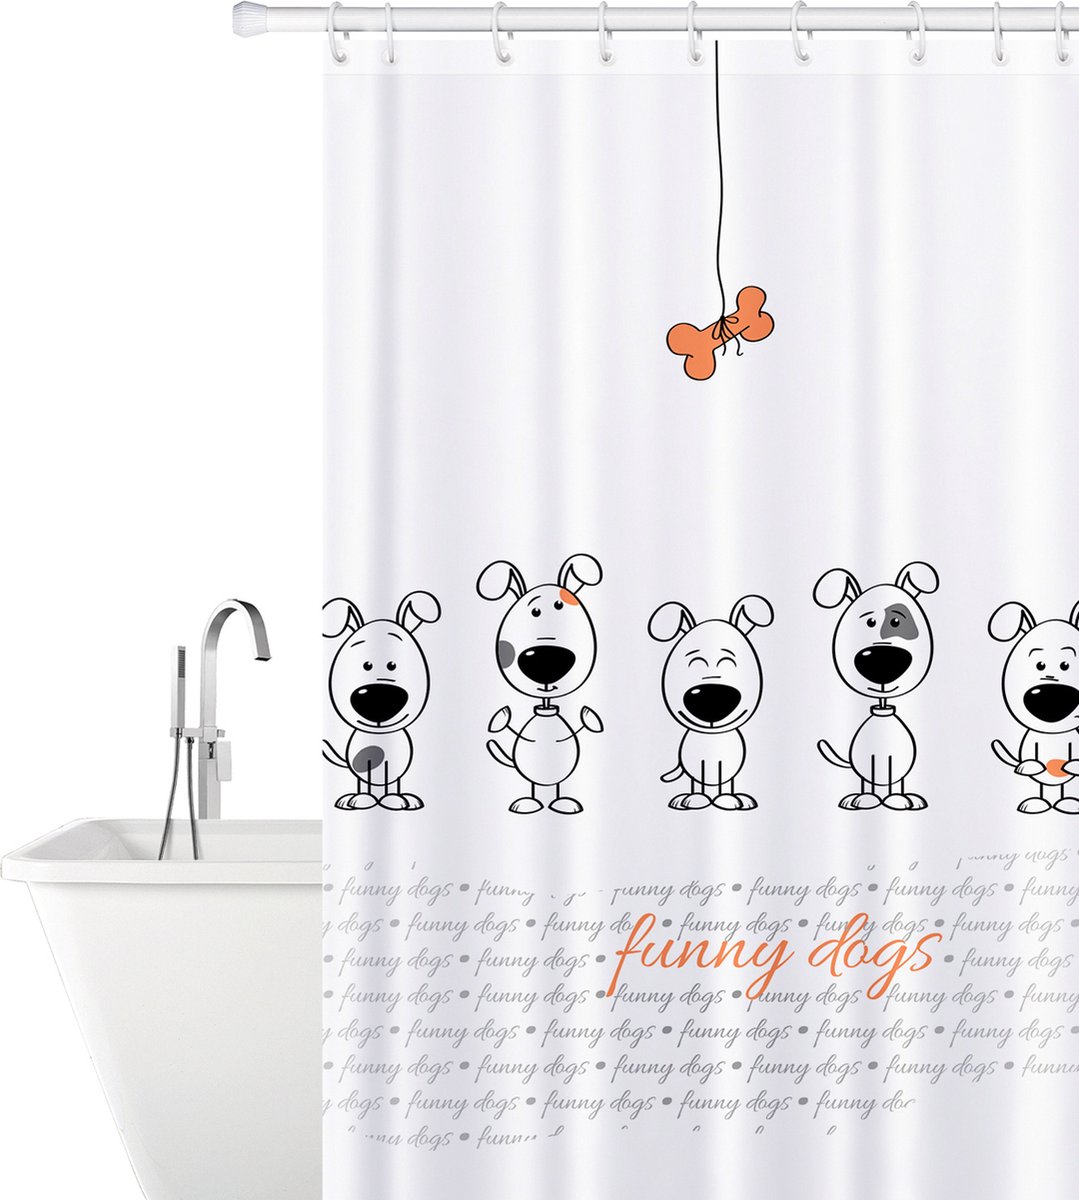 Waterdicht Douchegordijn - Met GRATIS 12 Ringen - Anti Schimmel Badkamer Gordijn - Shower Curtain Wasbaar - 100% Polyester - Funny Dogs Design - 180X180 CM